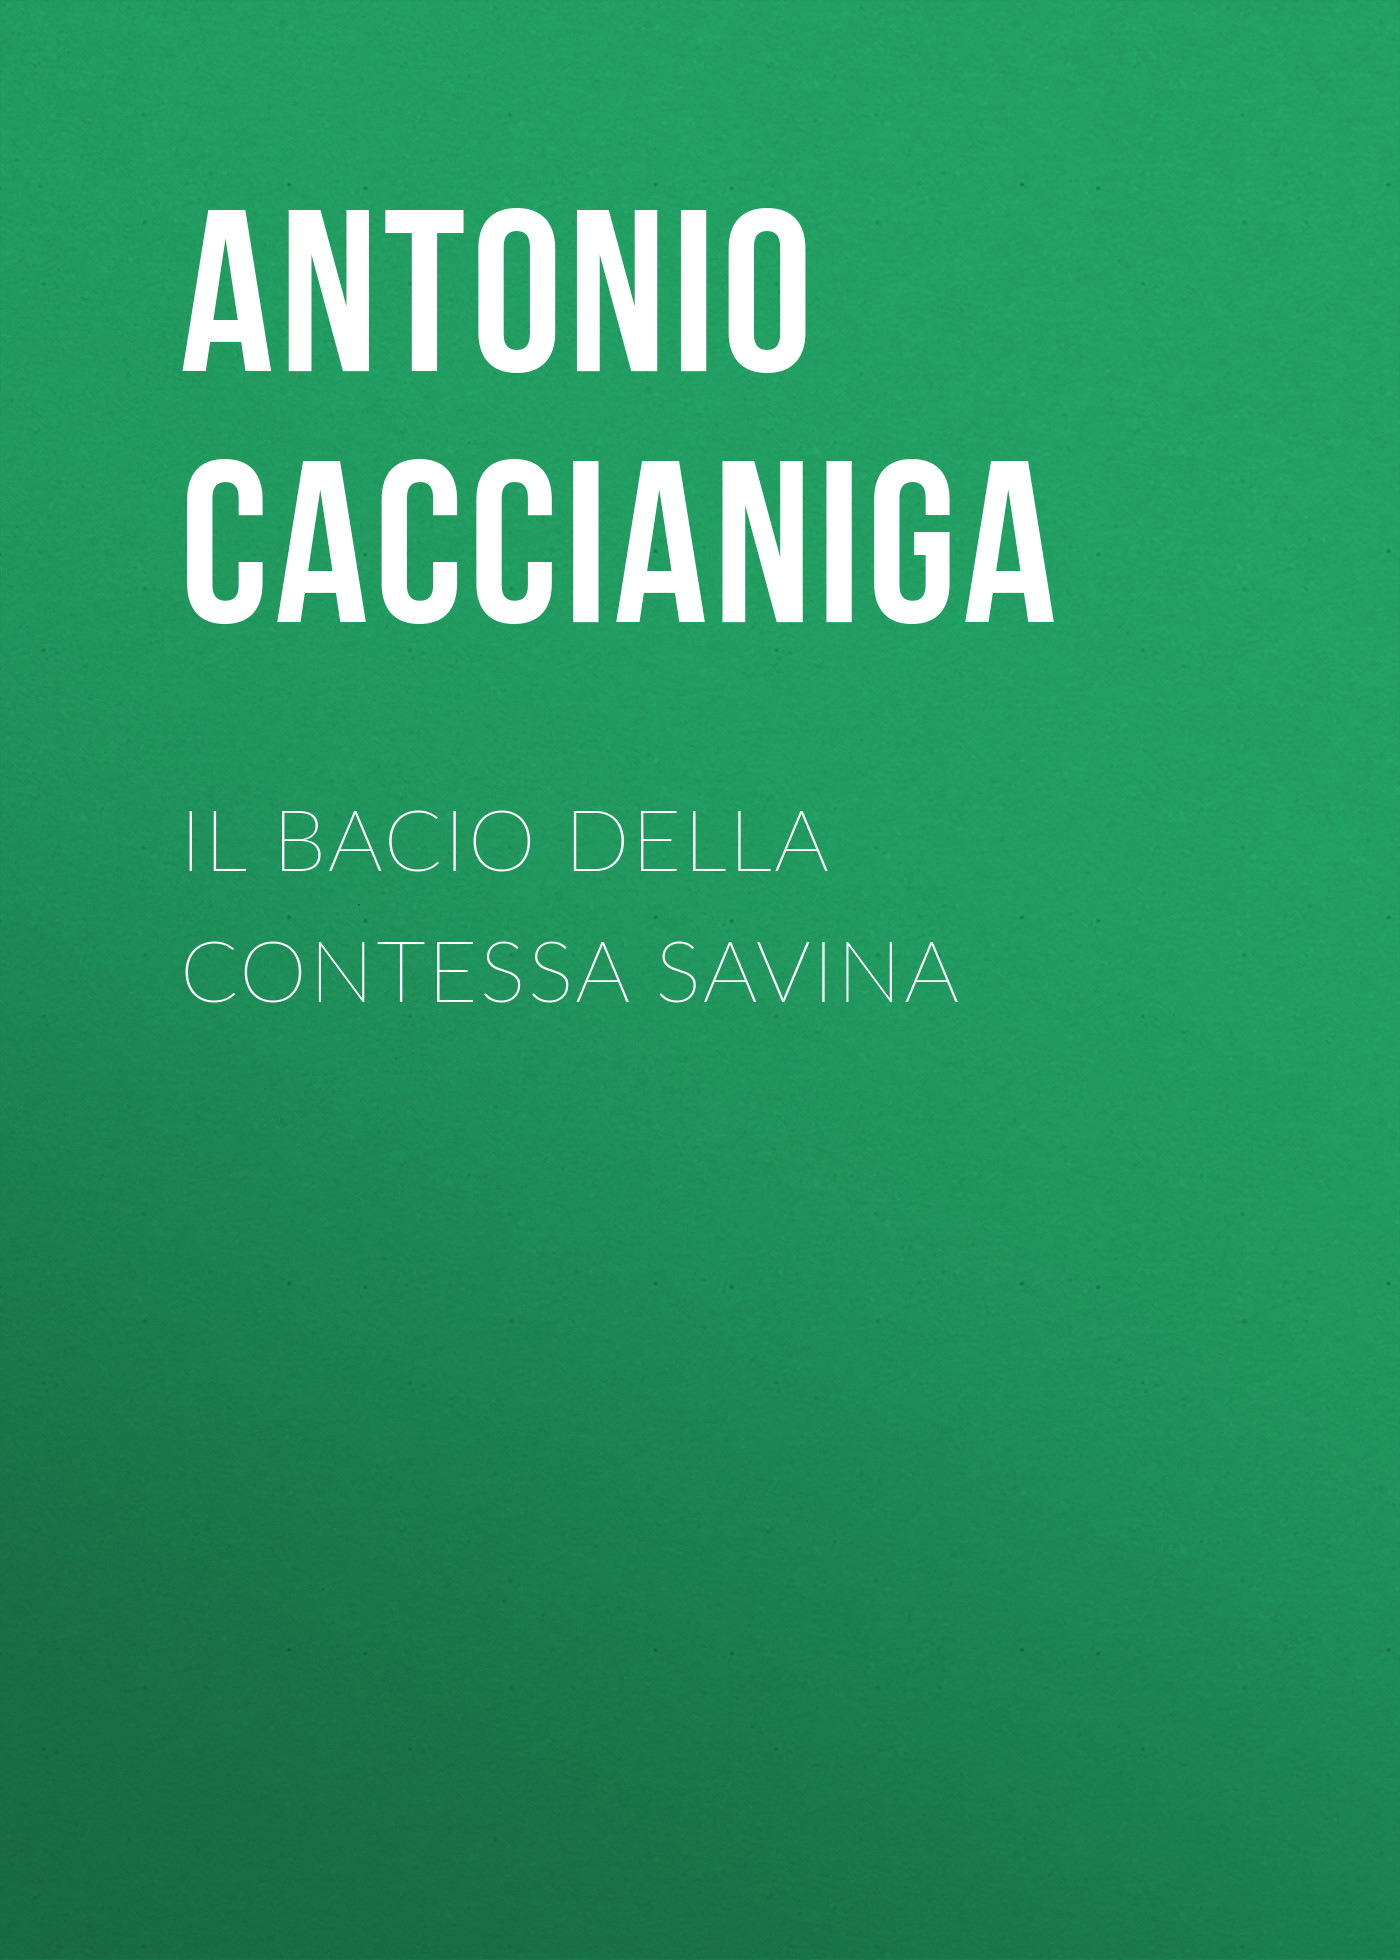 Книга Il bacio della contessa Savina из серии , созданная Antonio Caccianiga, может относится к жанру Зарубежная старинная литература, Зарубежная классика. Стоимость электронной книги Il bacio della contessa Savina с идентификатором 24180972 составляет 0.90 руб.